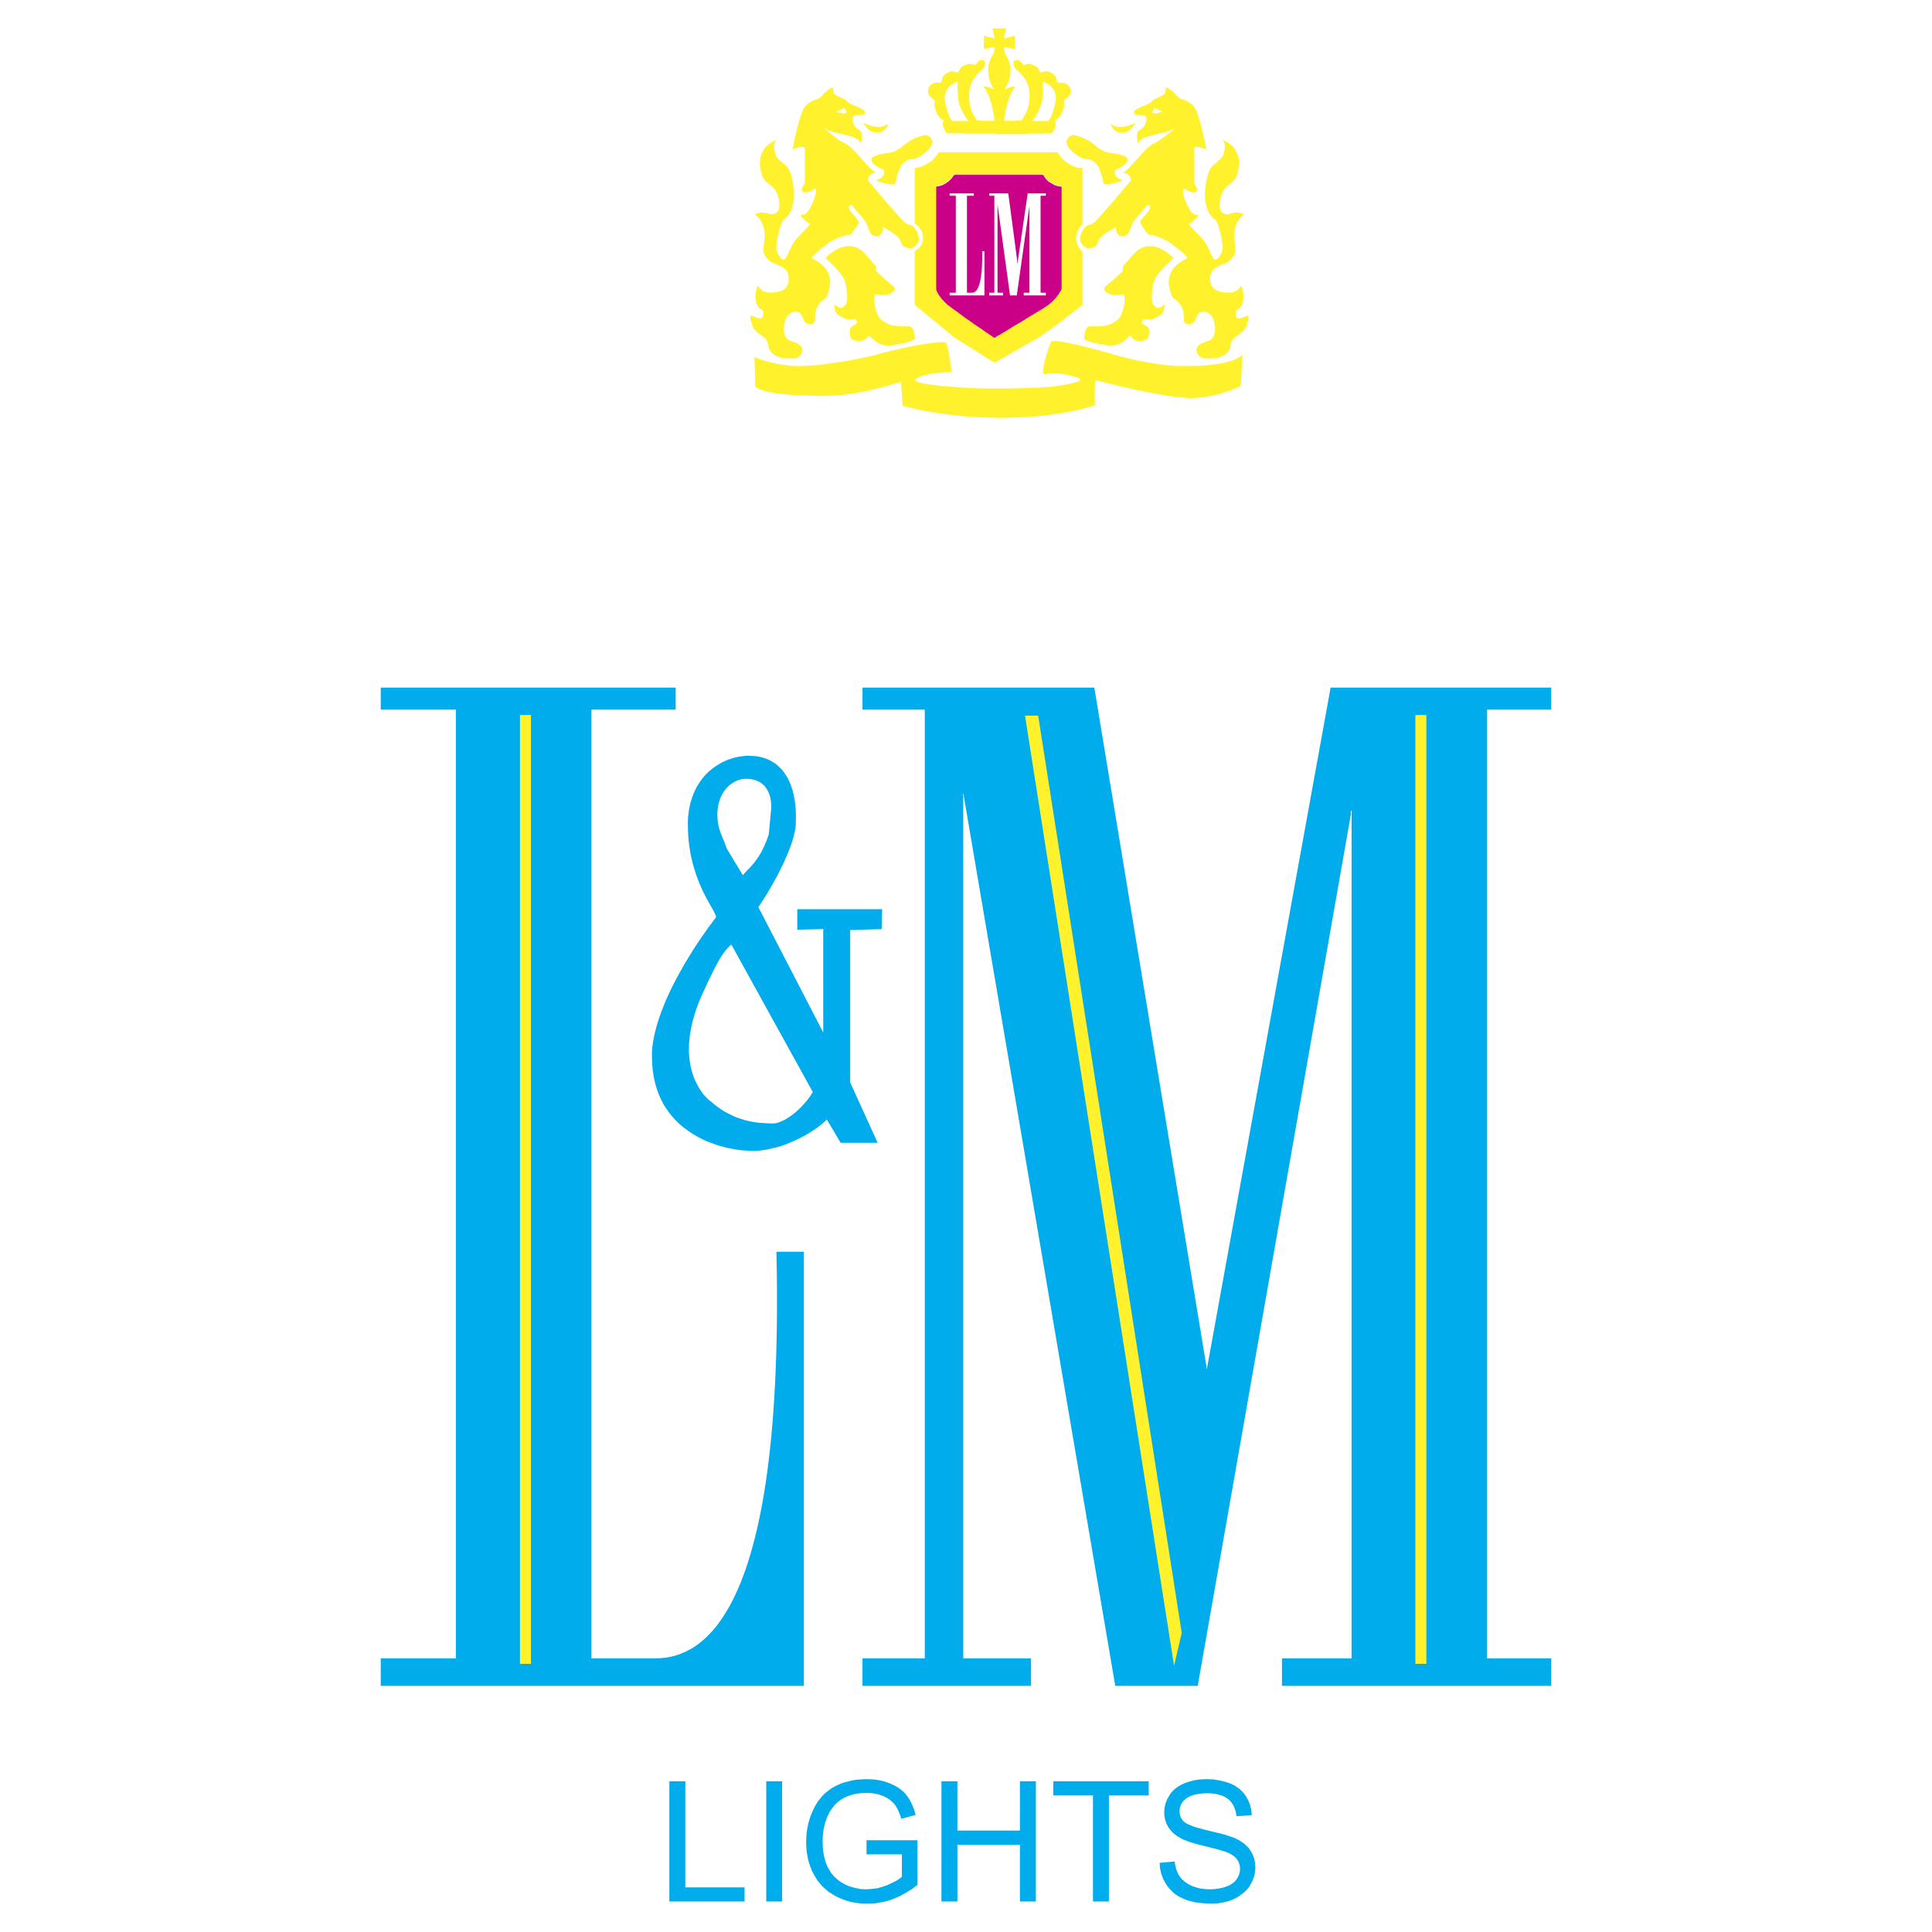 Lm logo maker